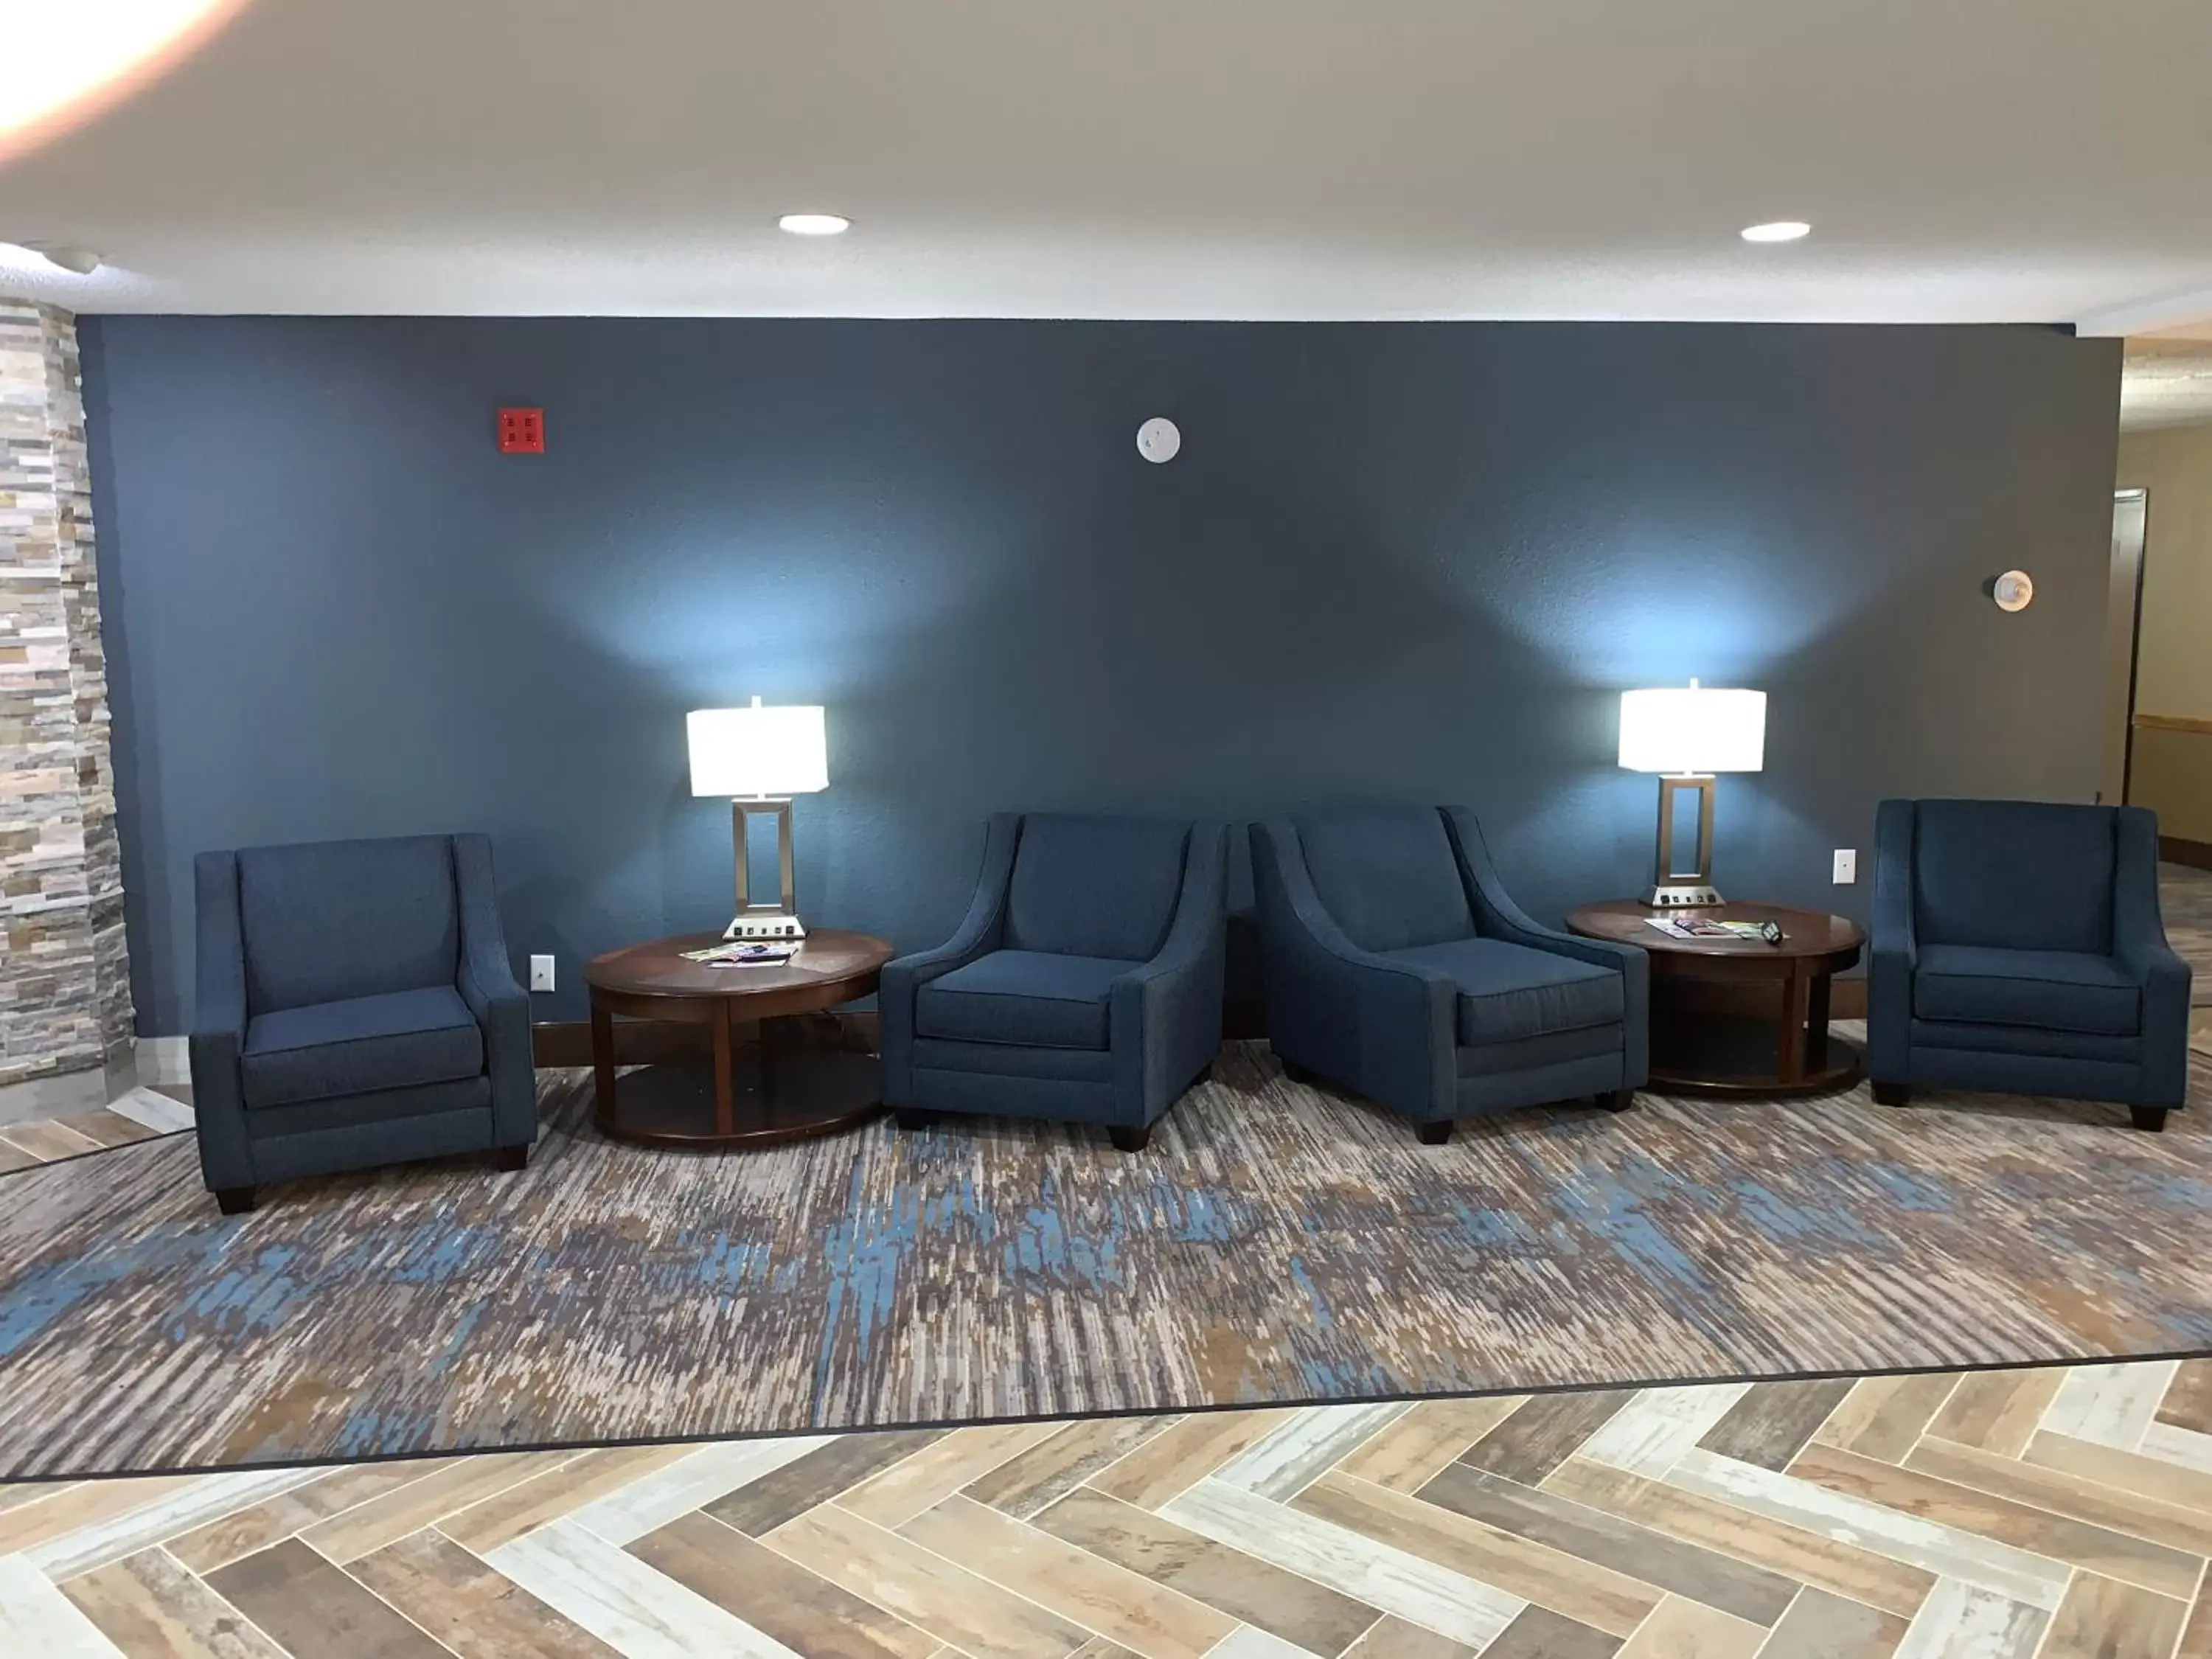 Lobby or reception, Seating Area in AmericInn by Wyndham Prairie du Chien